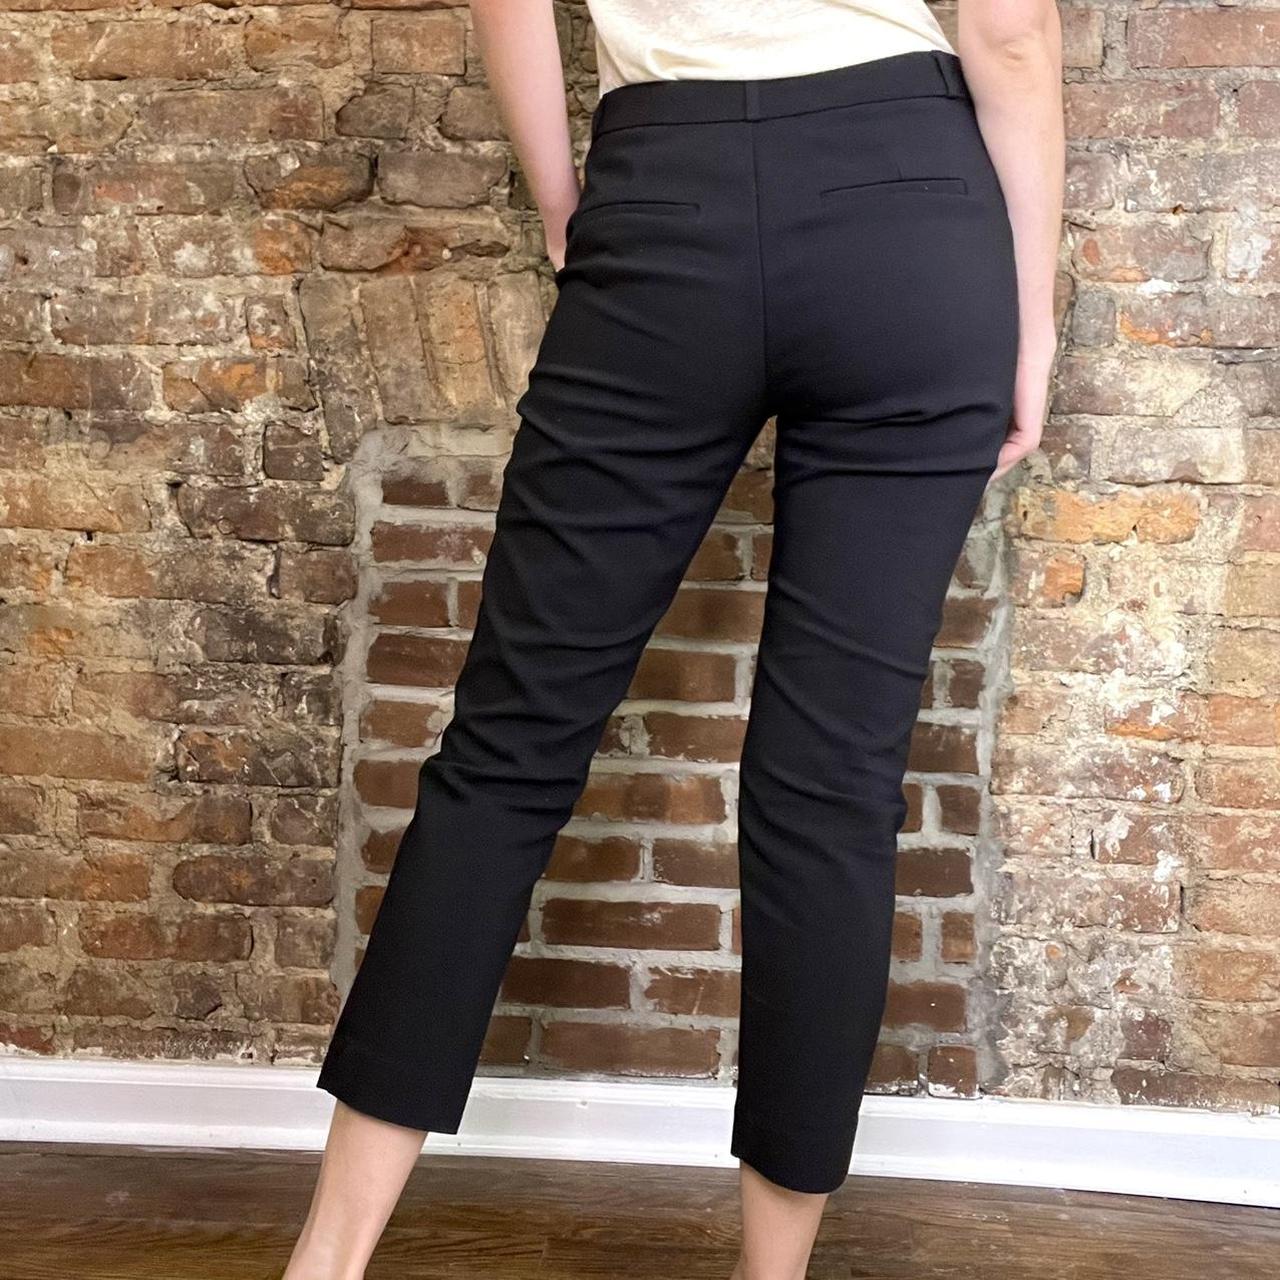 Product Image 4 - "stradivarius" minimalist cropped black pants.